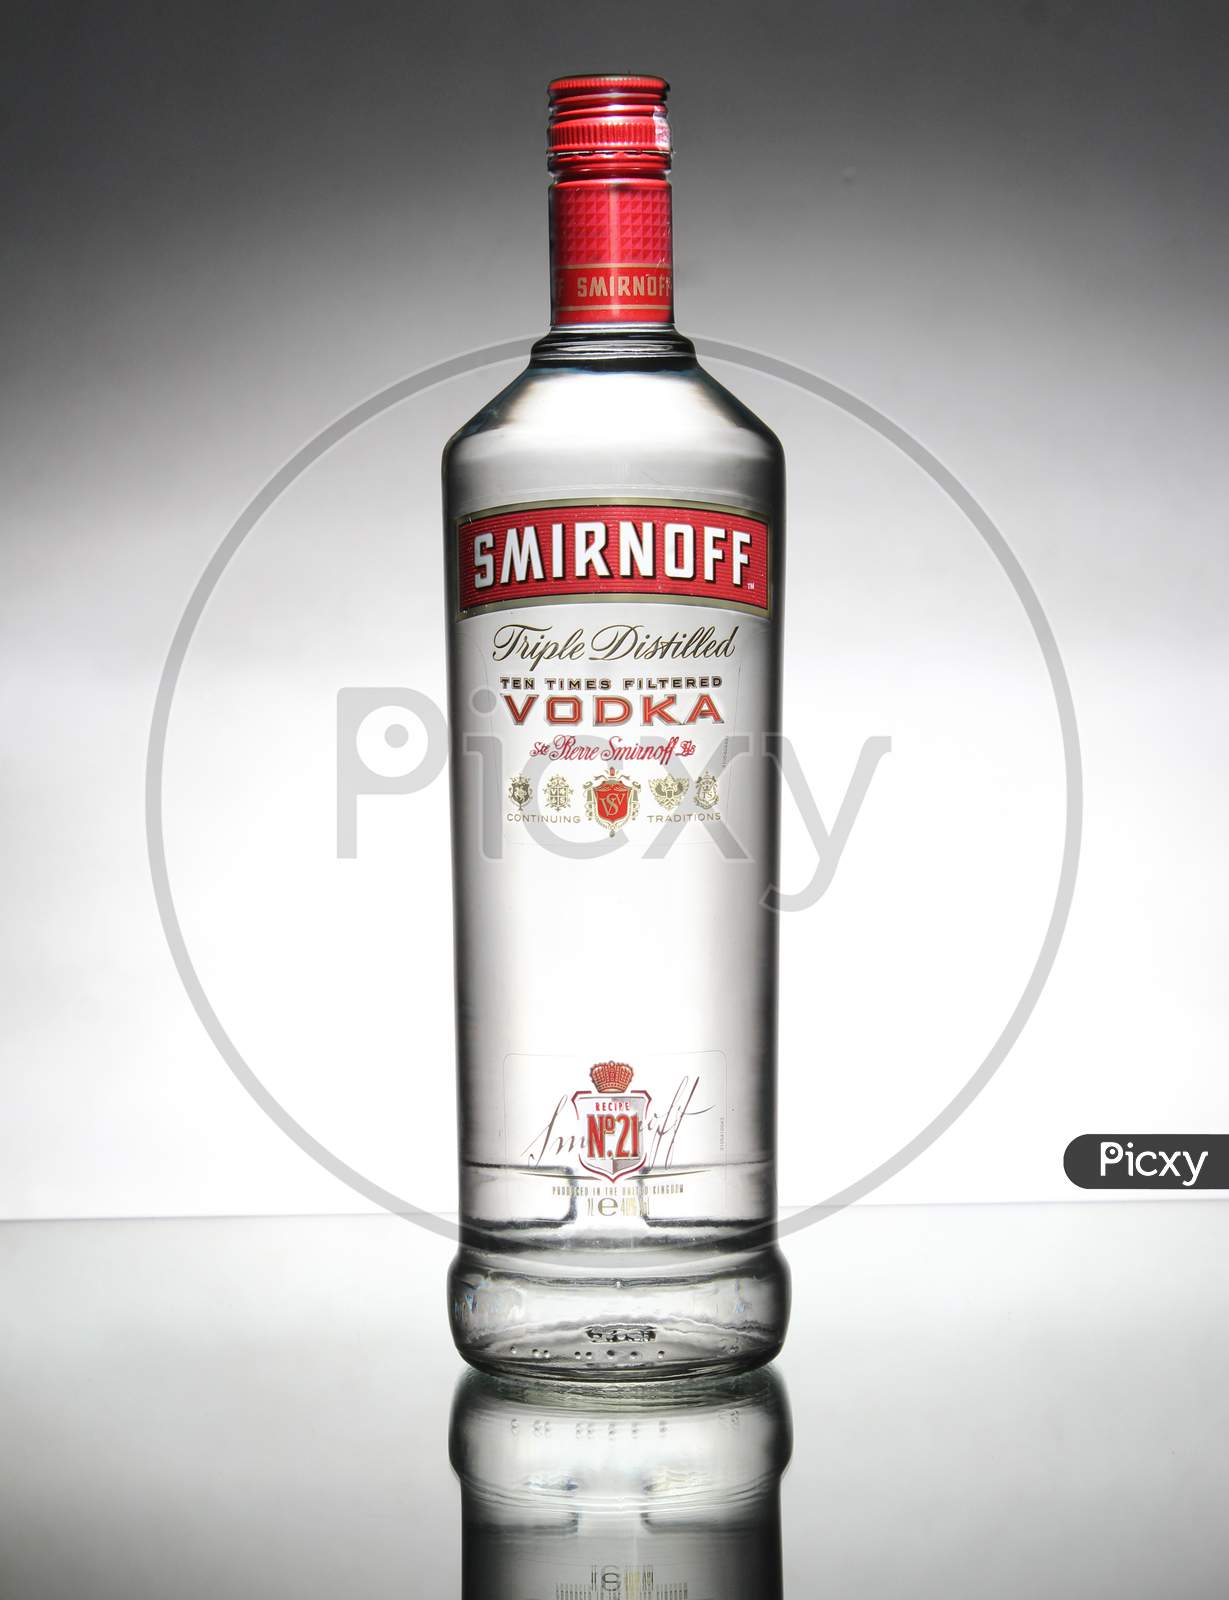 Premium Smirnoff vodka bottle